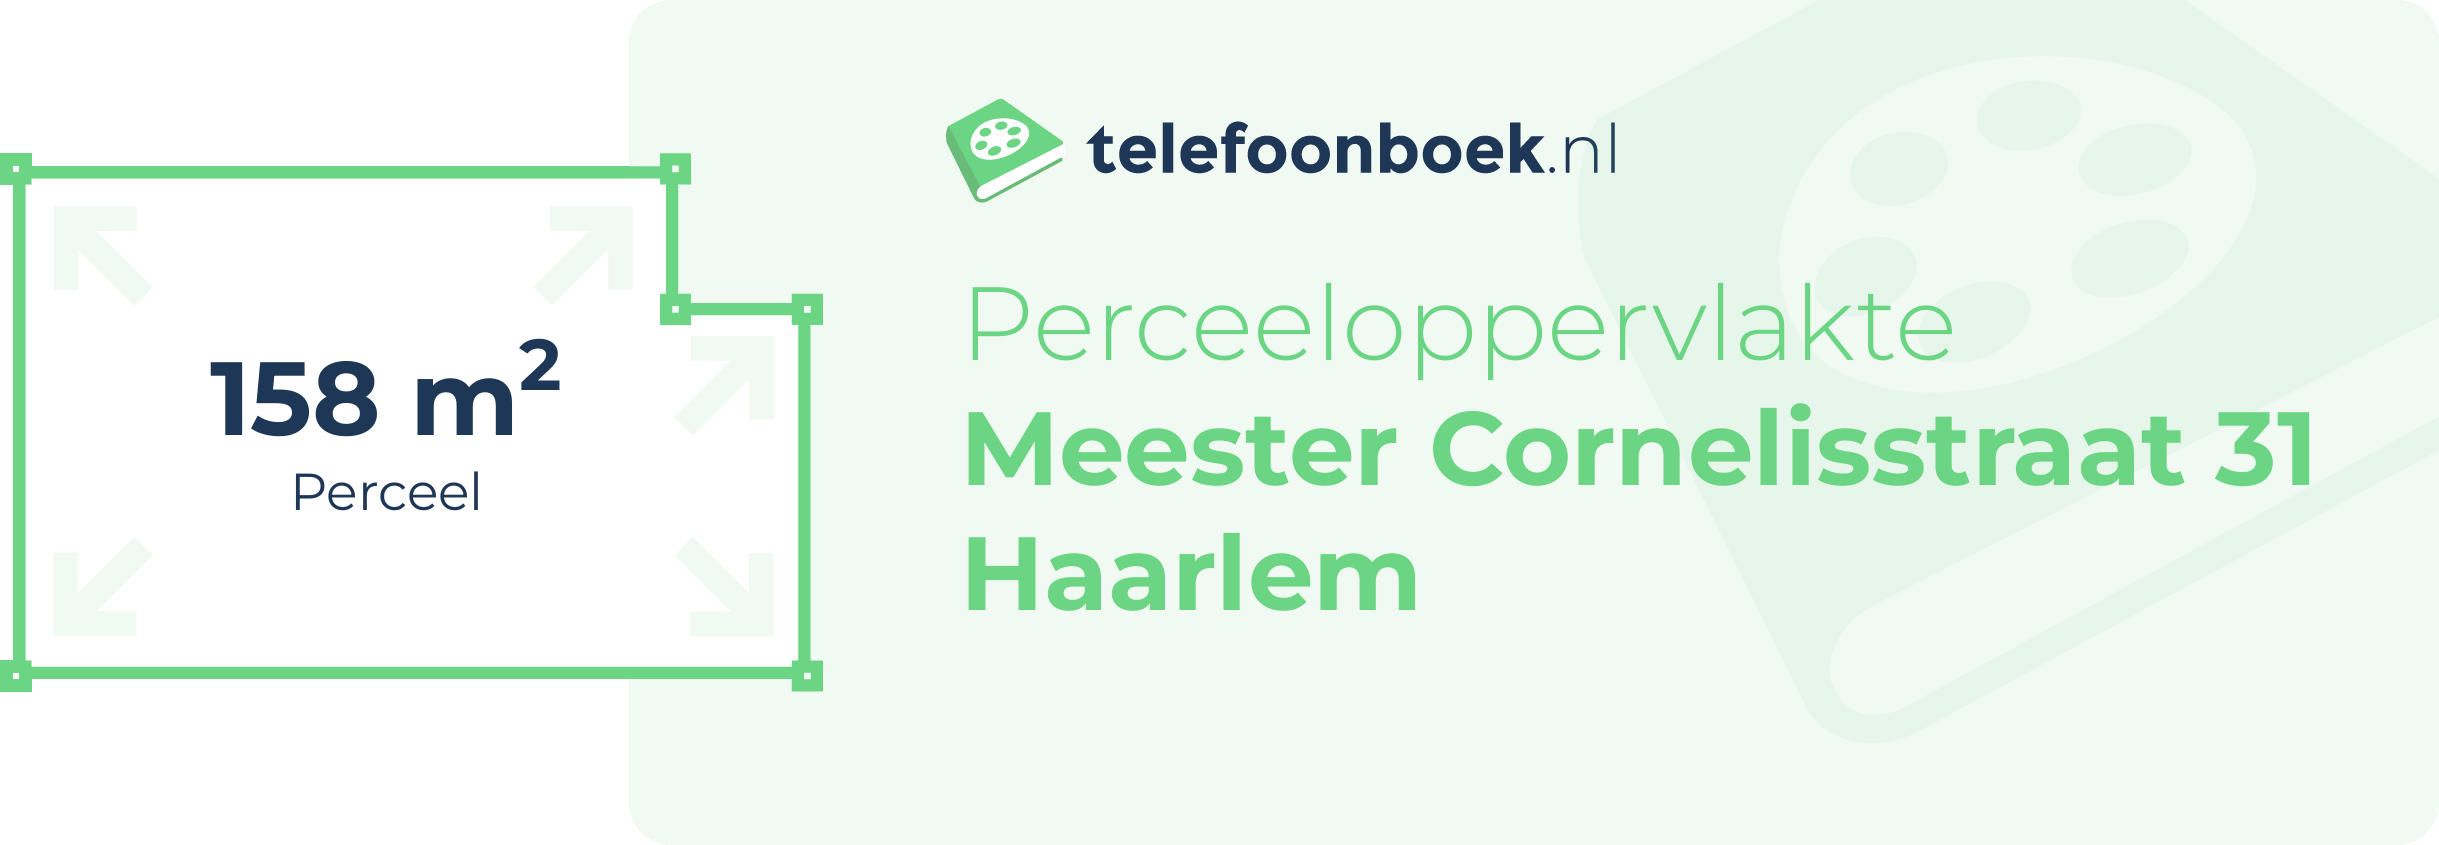 Perceeloppervlakte Meester Cornelisstraat 31 Haarlem